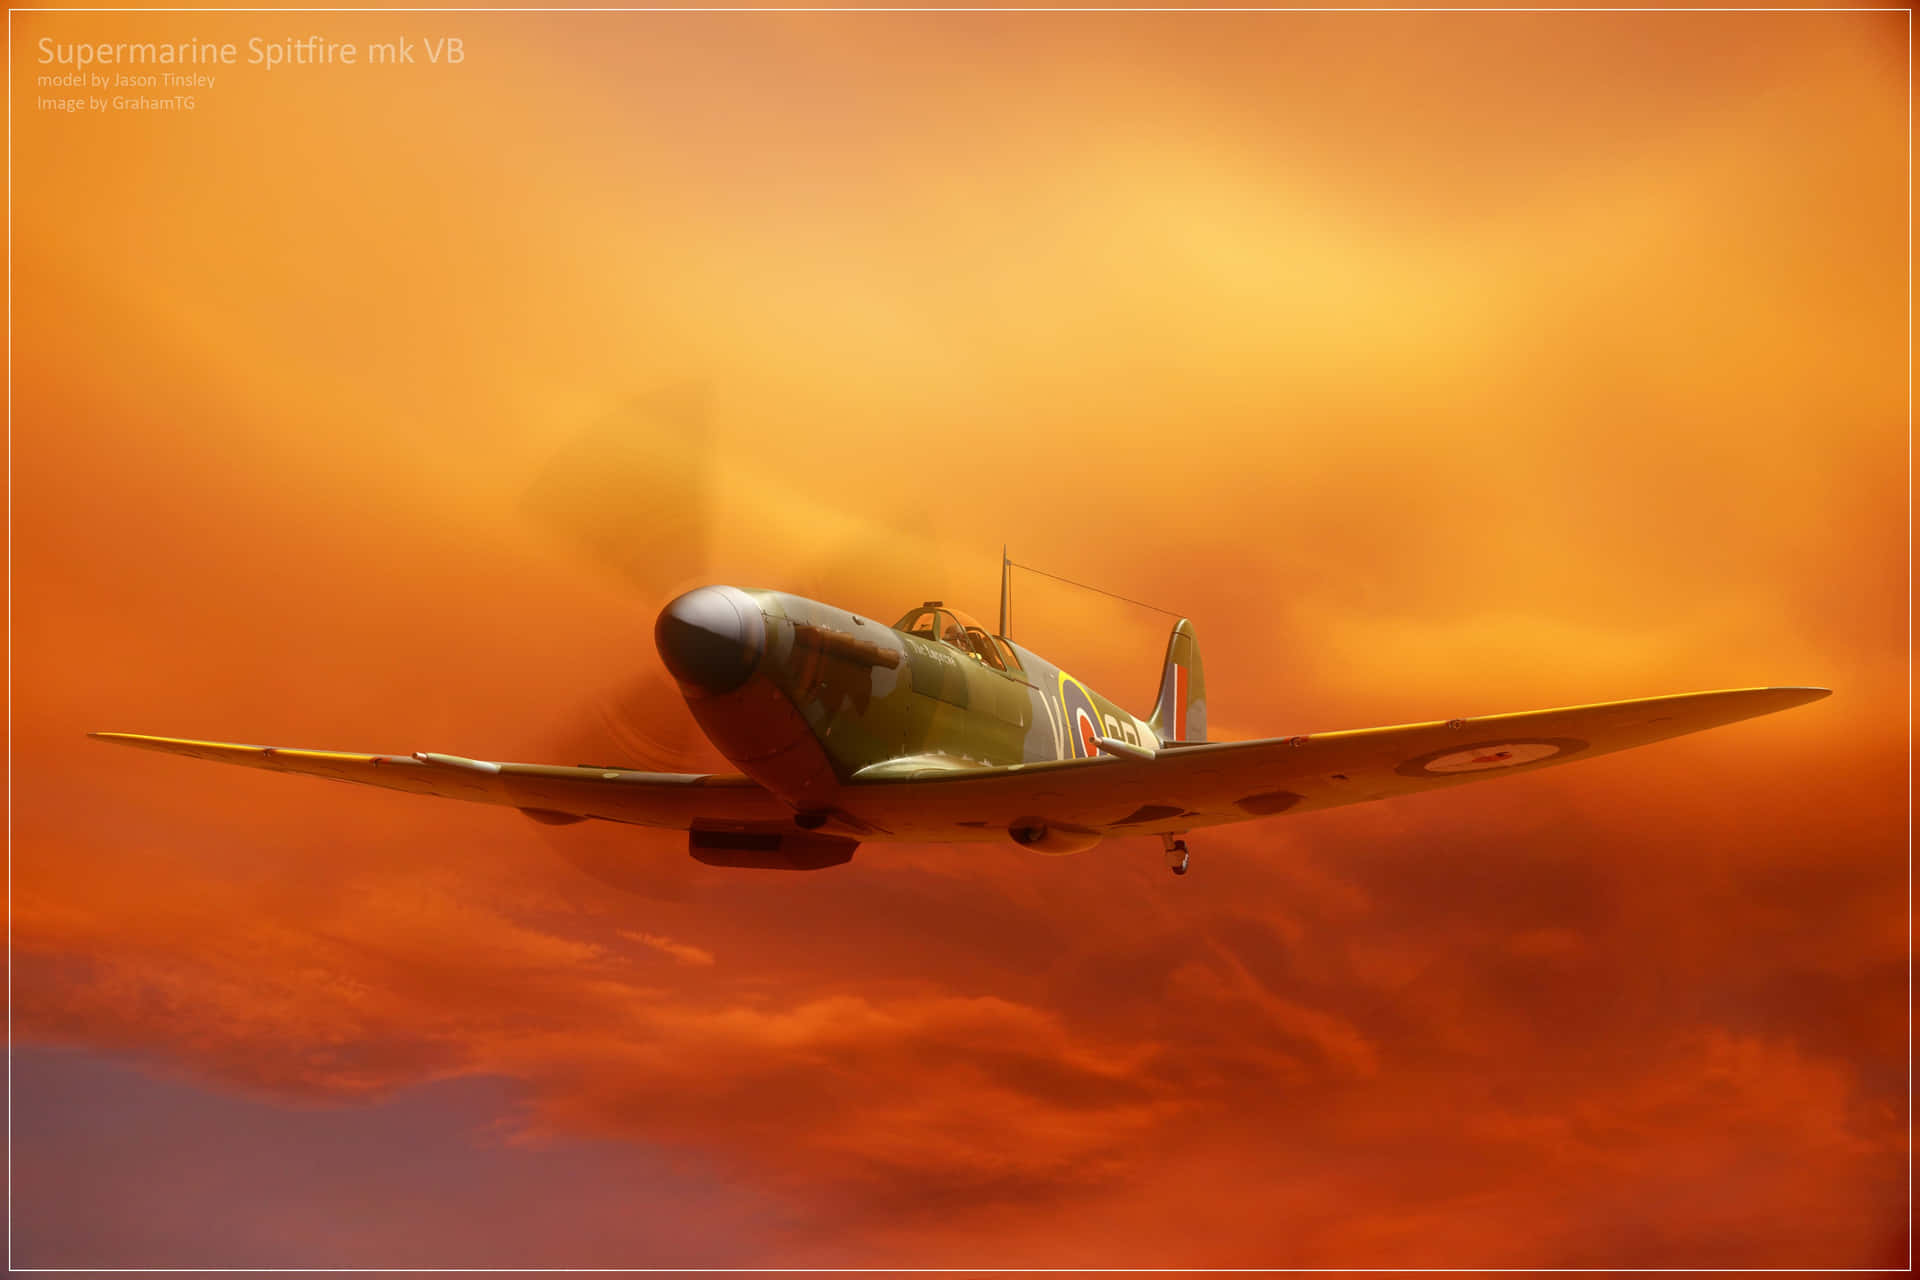 Unaereo Spitfire Che Vola Attraverso L'aria, Rappresentando Trionfo, Coraggio E Forza. Sfondo